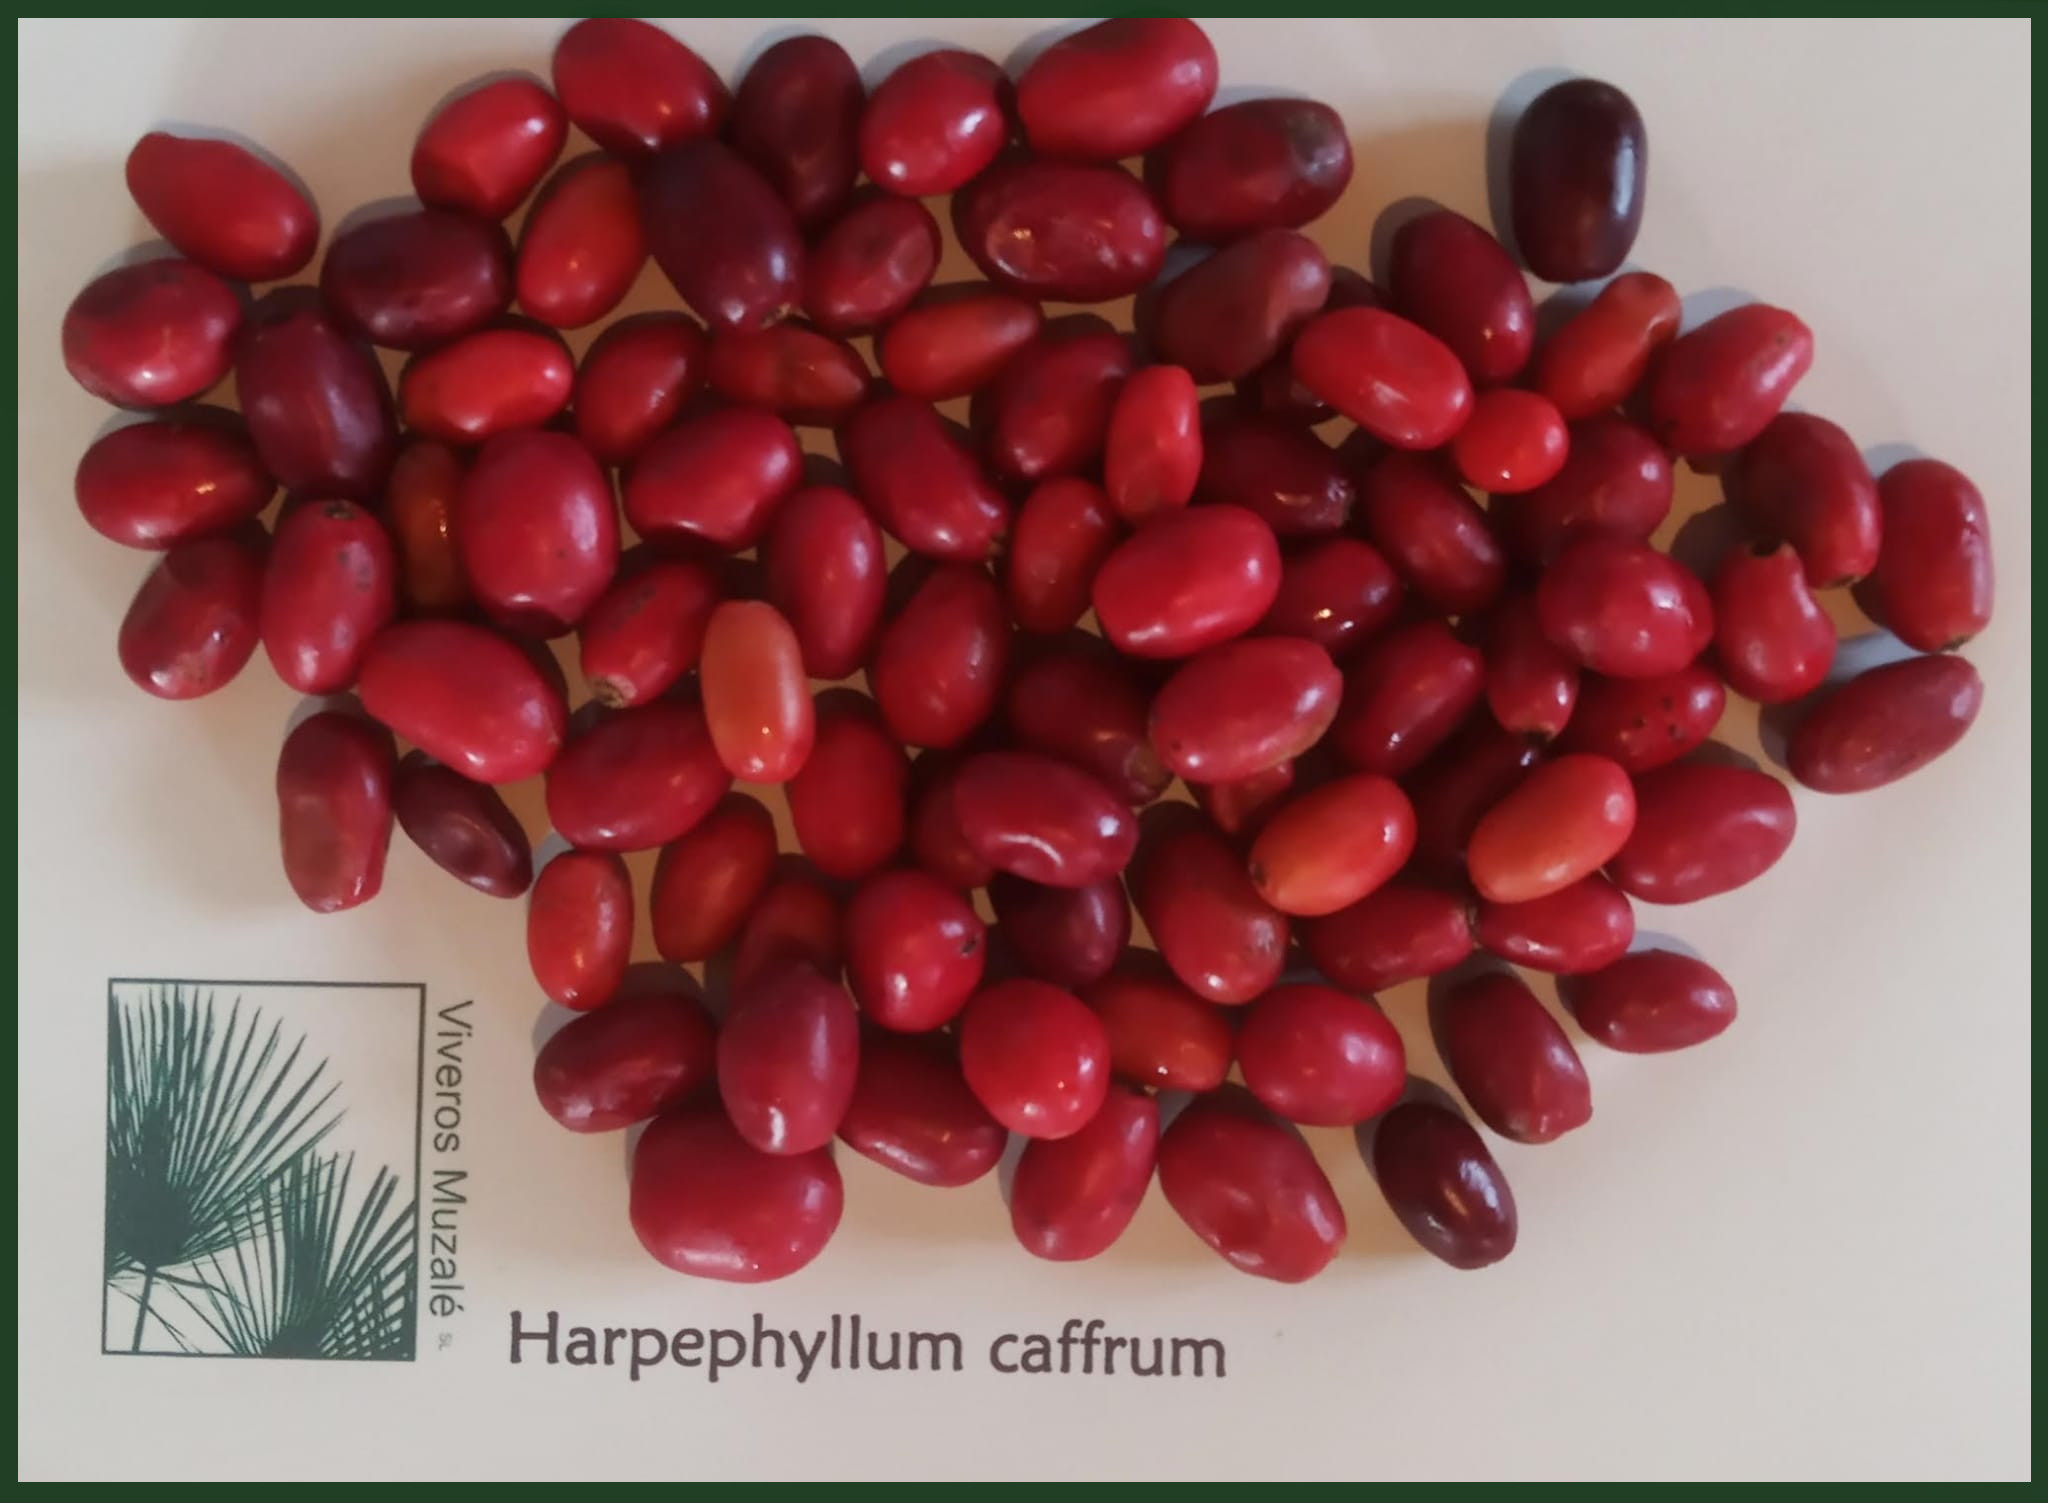 Harpephyllum caffrum